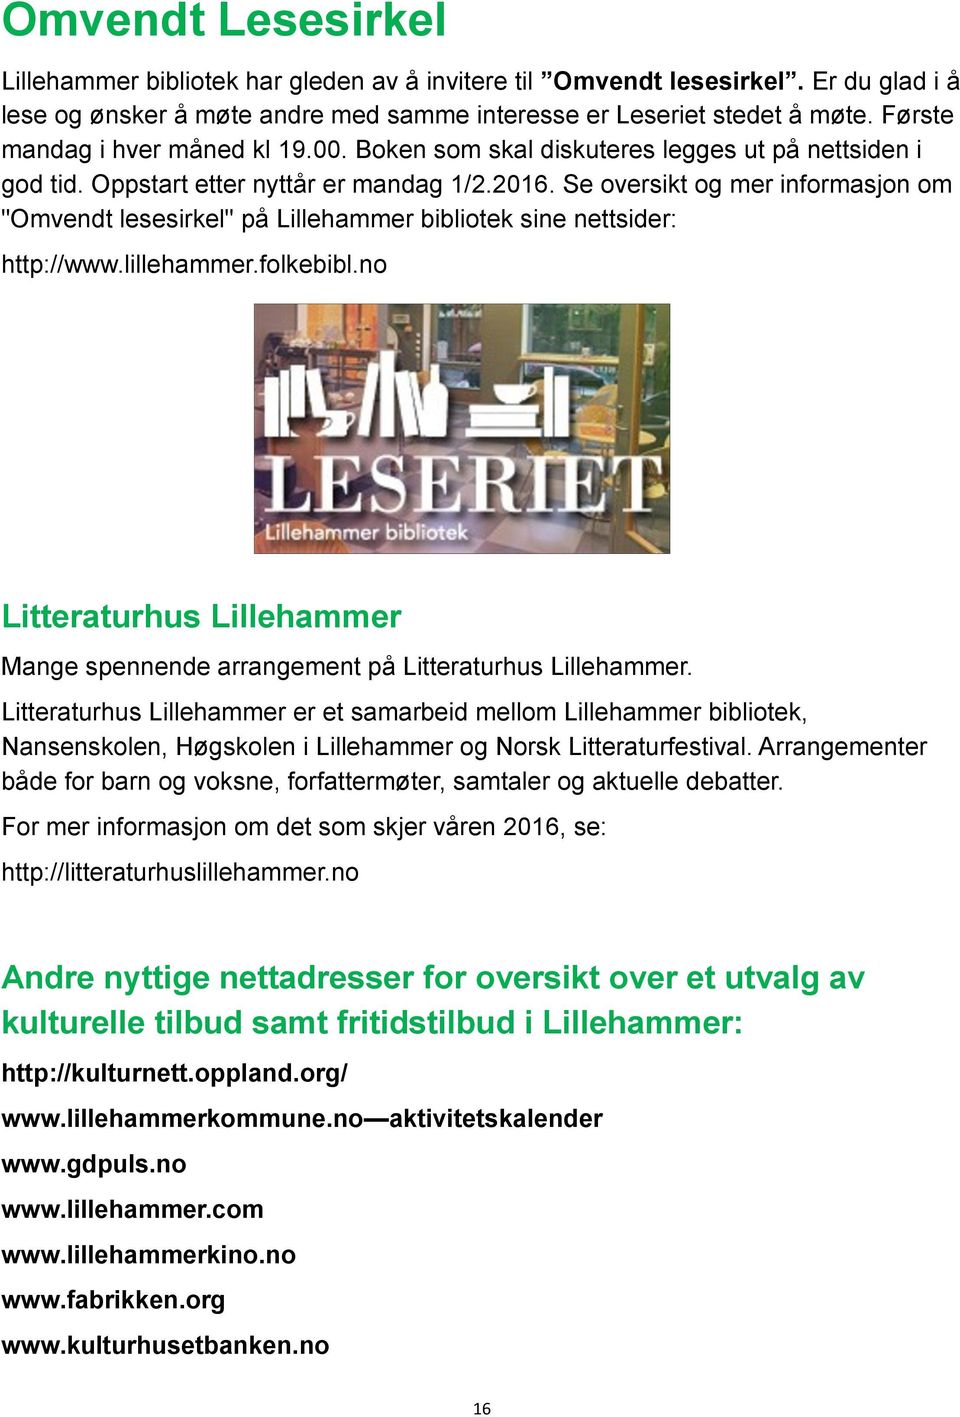 Se oversikt og mer informasjon om "Omvendt lesesirkel" på Lillehammer bibliotek sine nettsider: http://www.lillehammer.folkebibl.